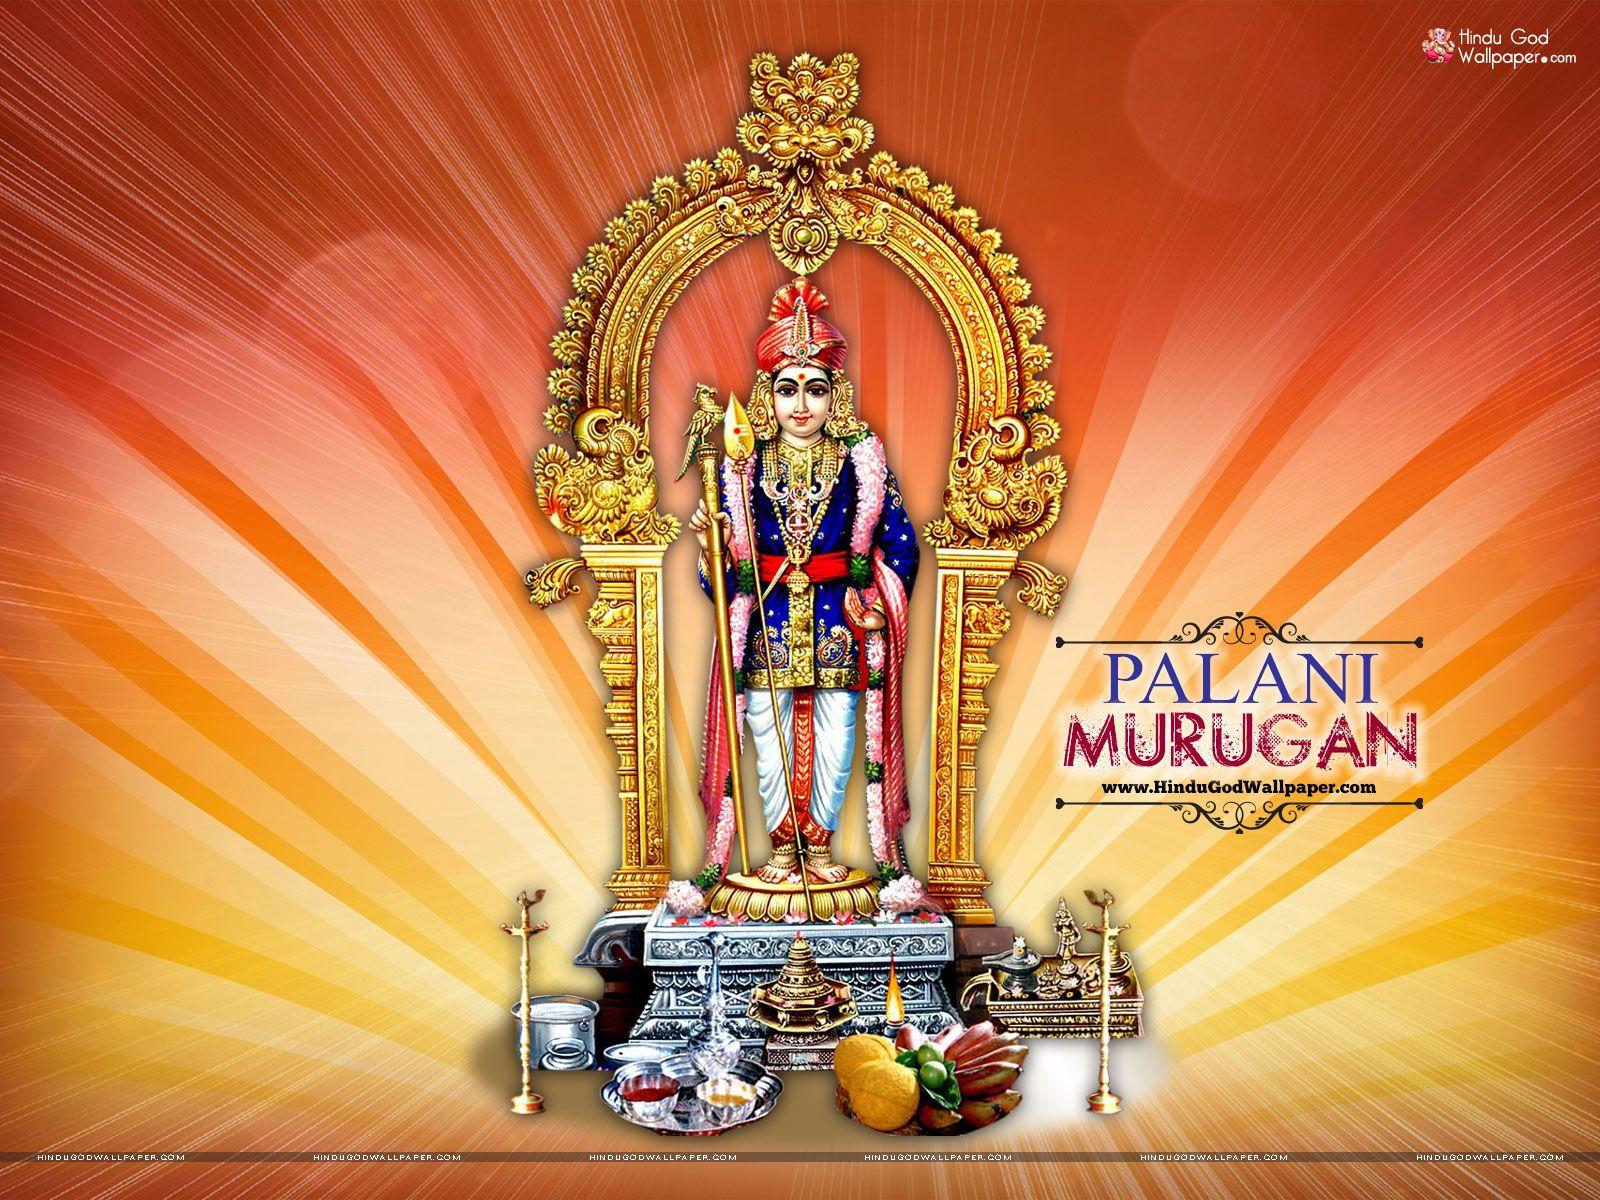 Free Palani Murugan HD Wallpaper download for desktop